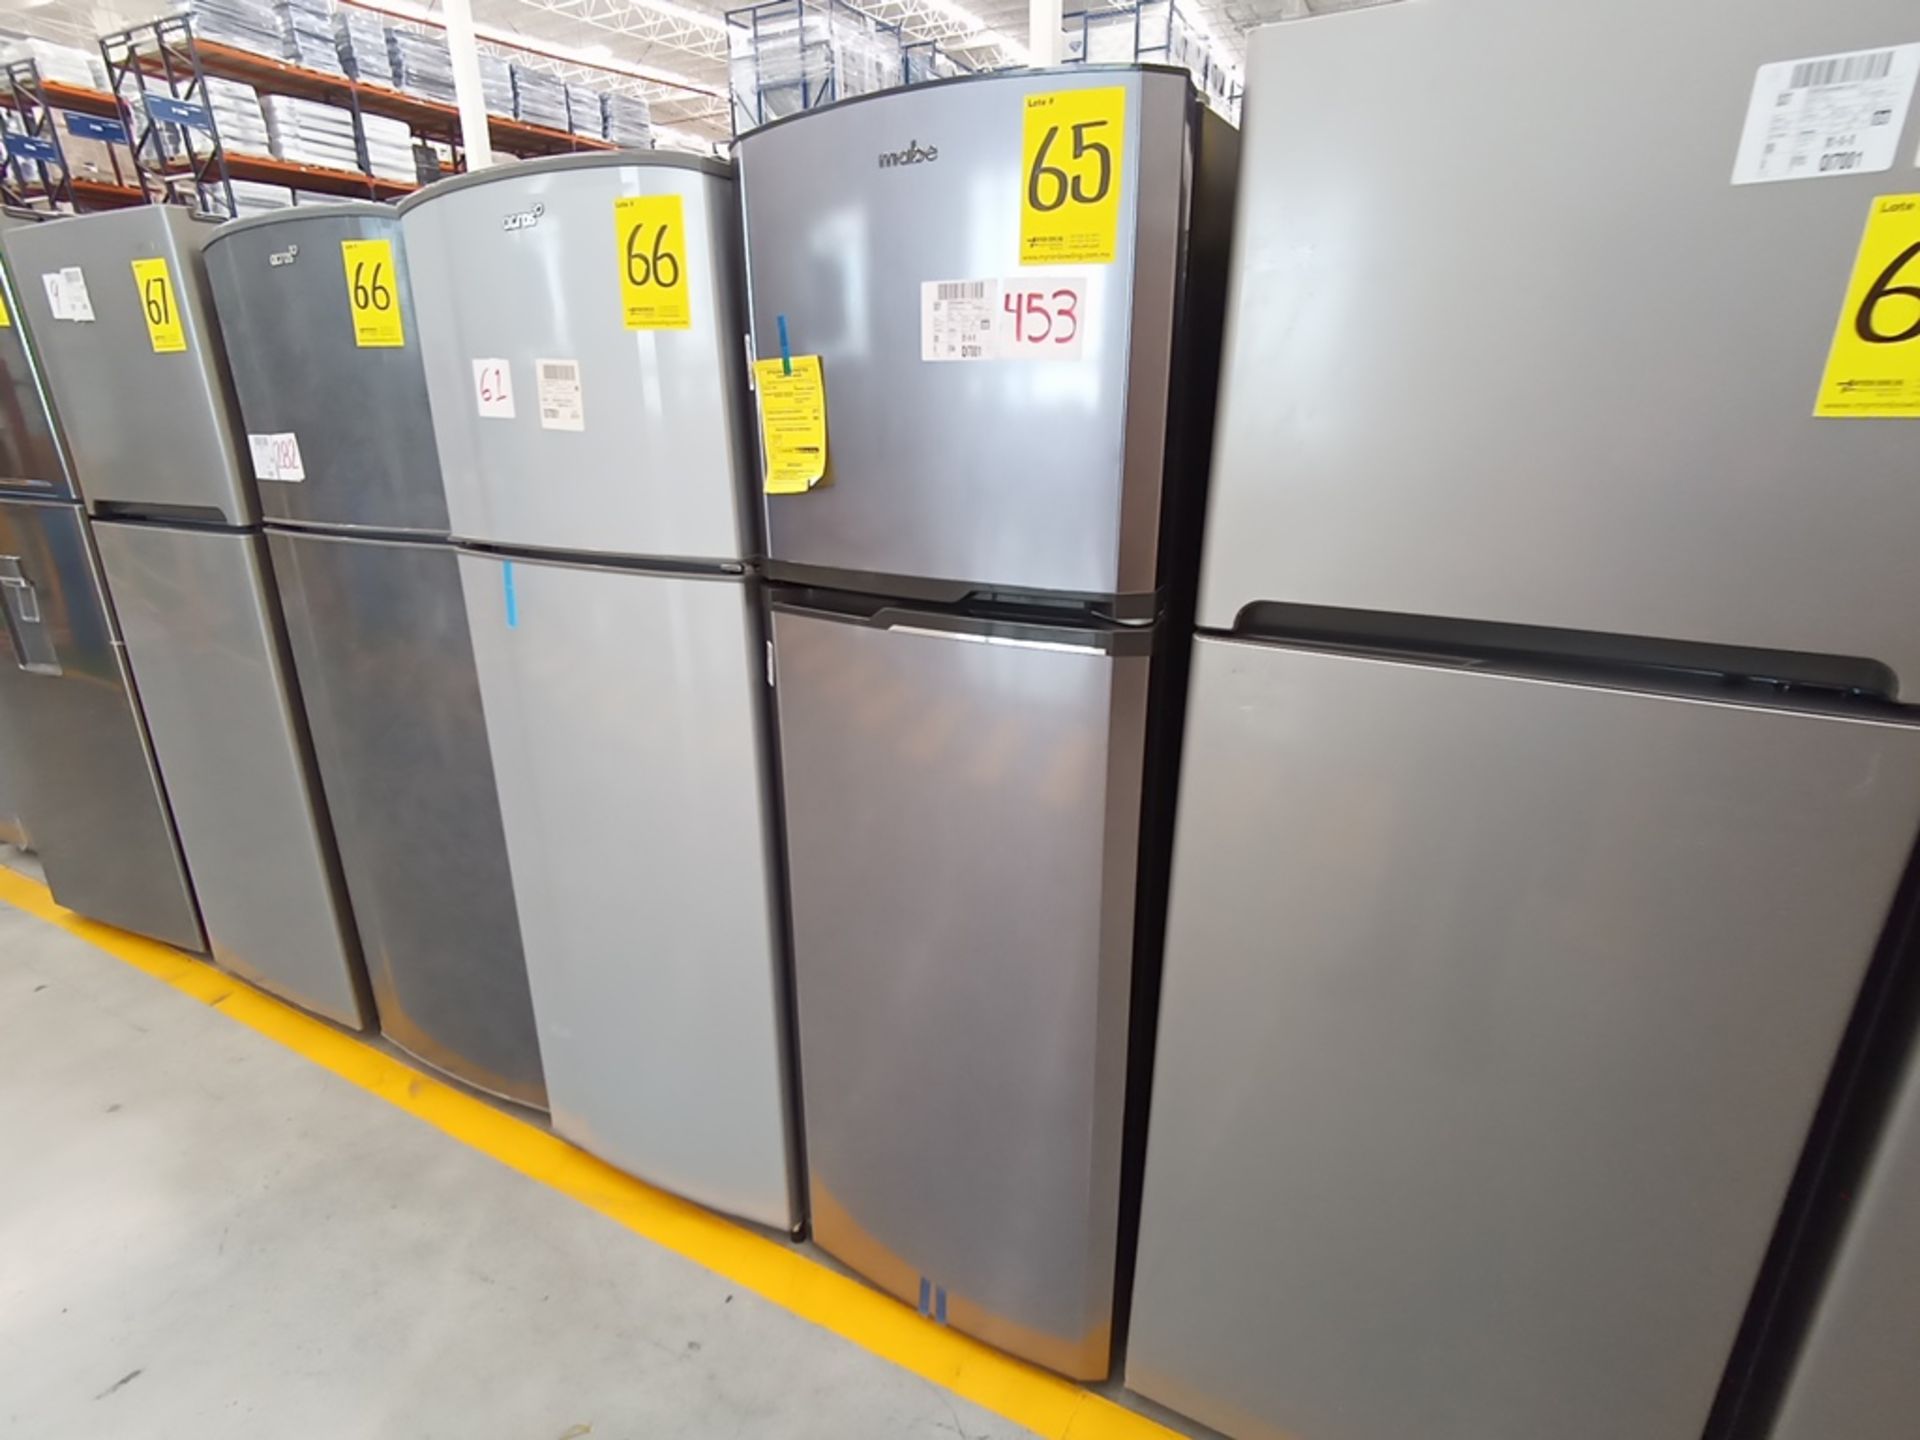 Lote de 2 Refrigeradores contiene: 1 Refrigerador Marca Winia, Modelo DFR-32210GNV, Serie MR216N130 - Image 4 of 15